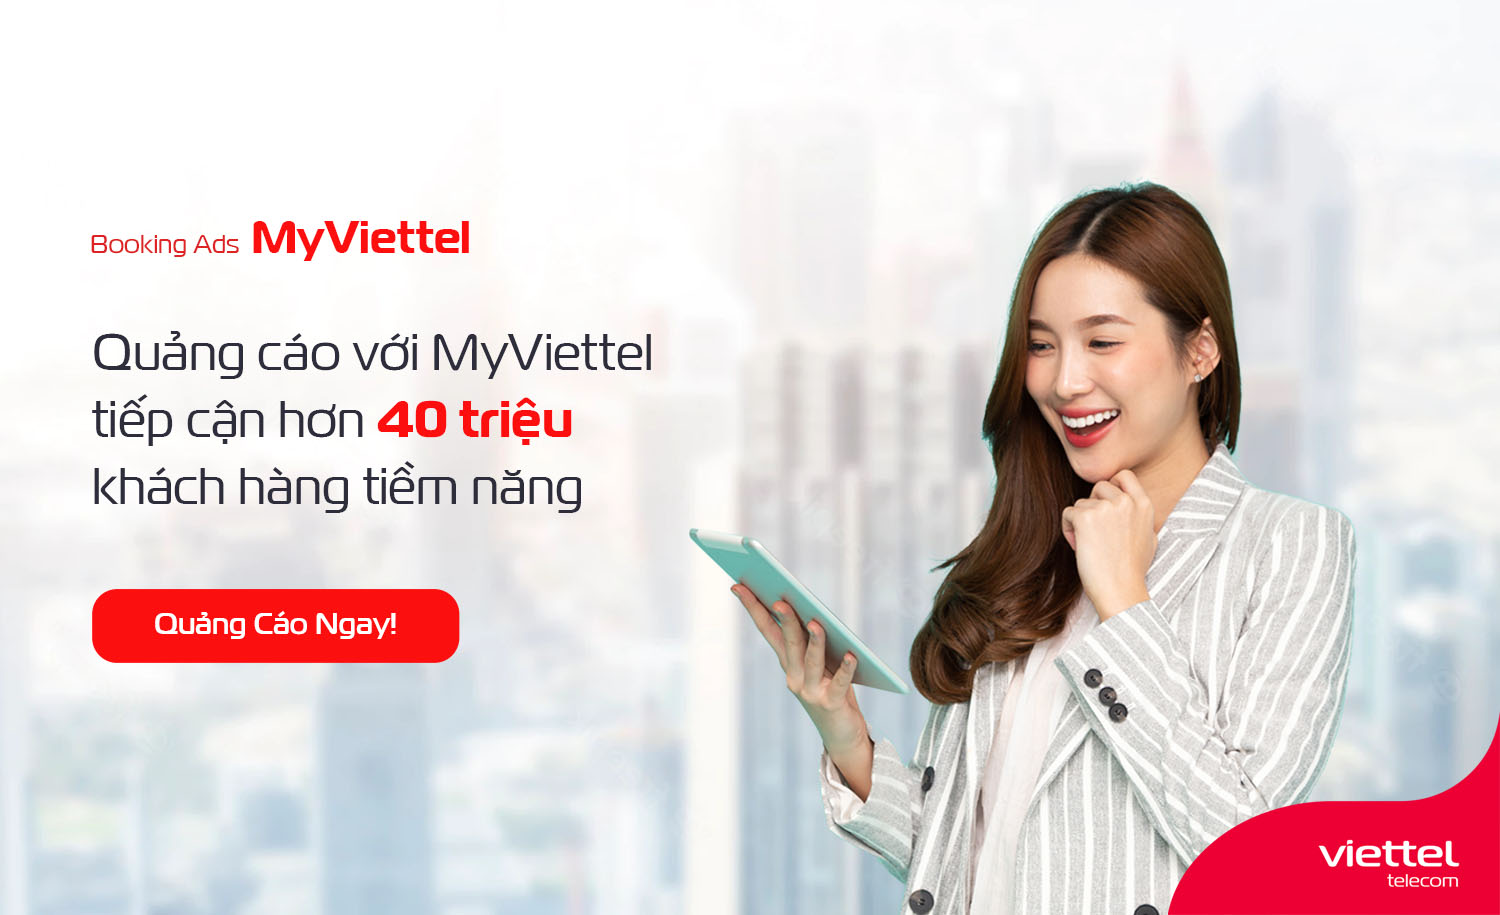 Quảng cáo trên My Viettel: Nâng cao doanh số với quảng cáo trực tuyến hiệu quả trên My Viettel. Với bộ công cụ quảng cáo đa dạng và chuyên nghiệp, bạn có thể giới thiệu sản phẩm hoặc dịch vụ của mình đến một đối tượng khách hàng tiềm năng lớn. Hãy khám phá ngay tính năng quảng cáo trên nền tảng My Viettel để cải thiện kinh doanh của bạn!